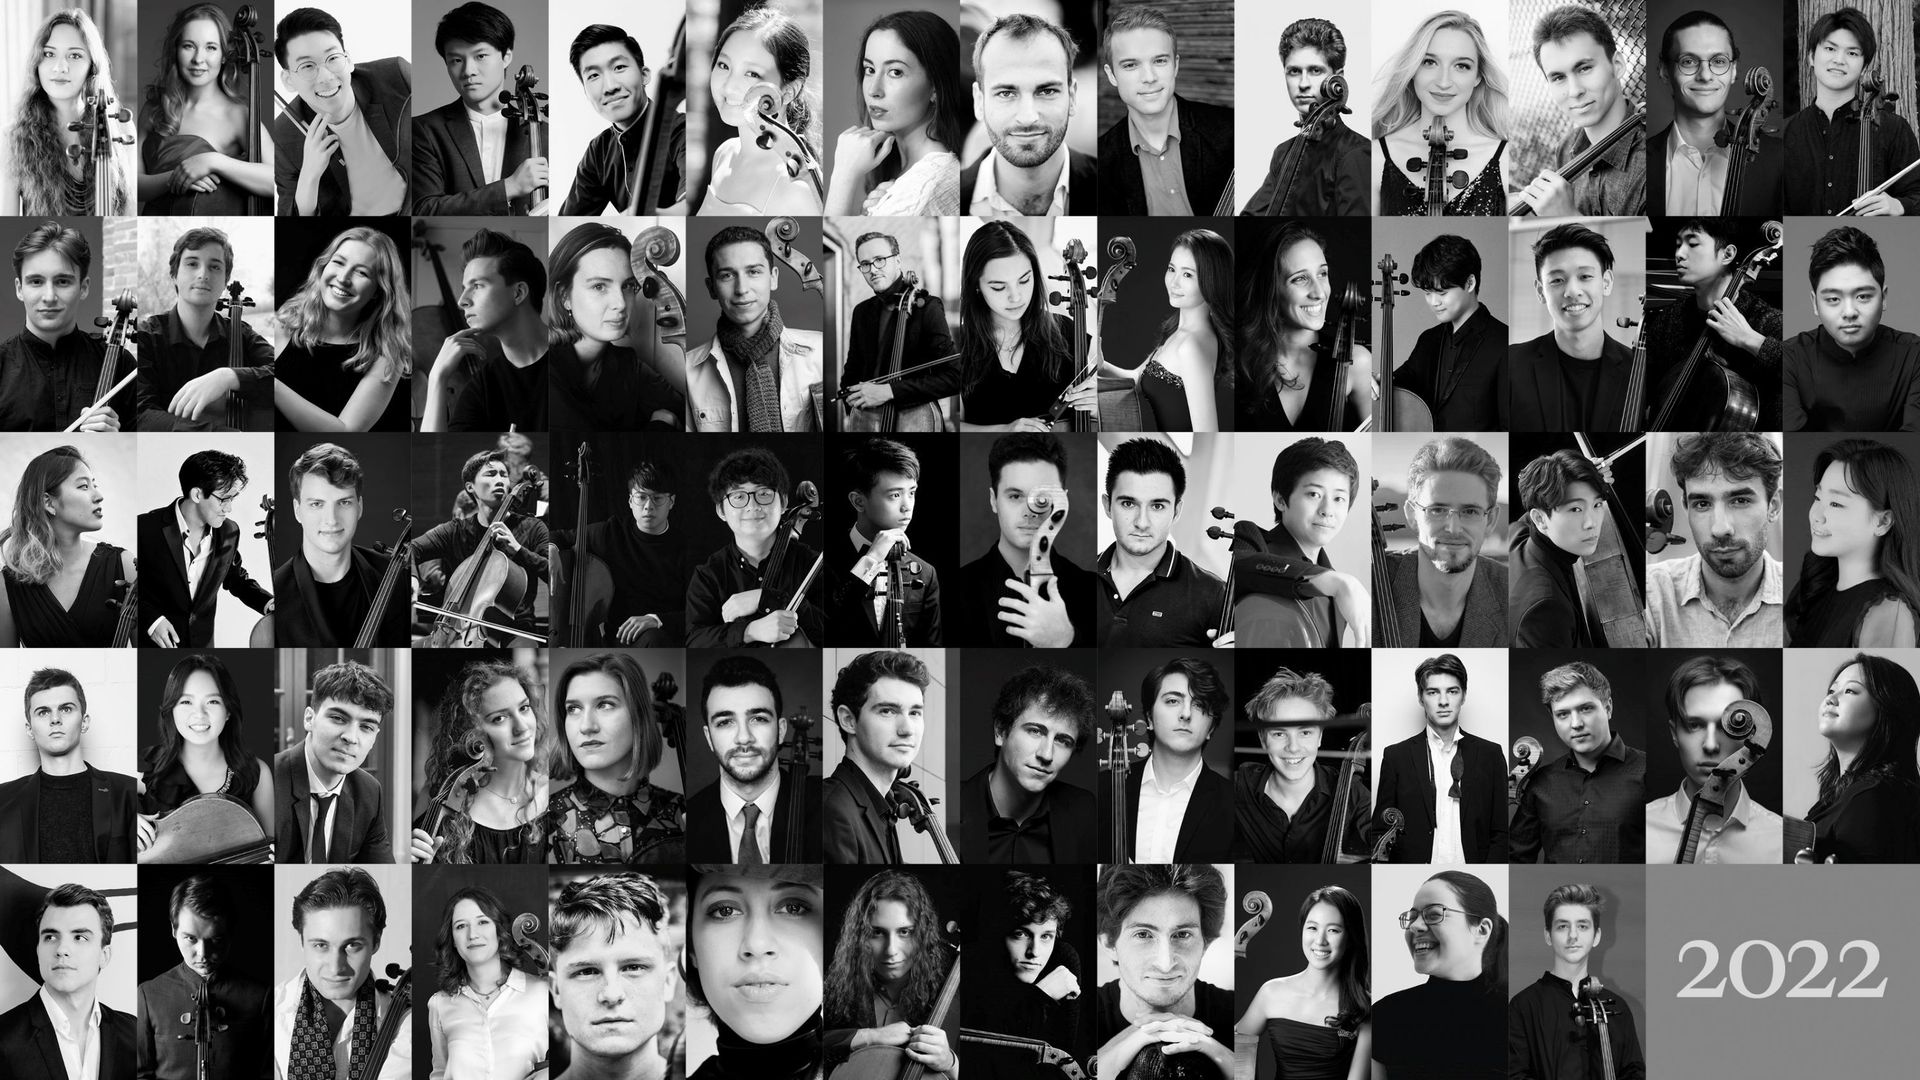 Parmi les 68 candidats retenus pour le Concours violoncelle 2022, il y a 4 Russes et 1 Ukrainien